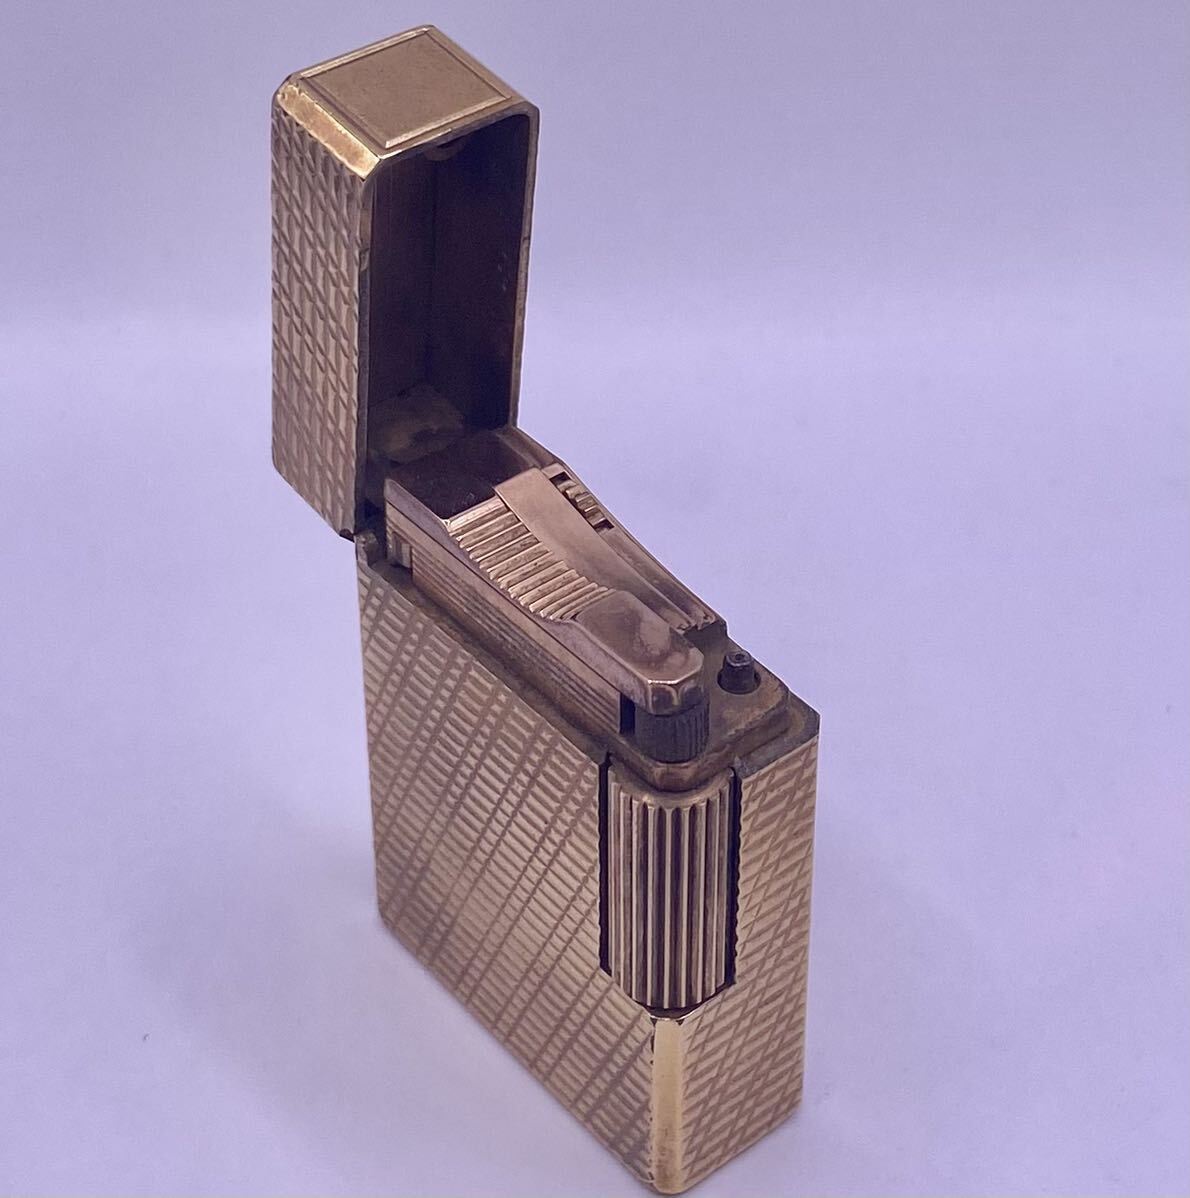 人気ライター デュポン ダンヒル ゴールドカラー ローラー 喫煙具 ケース付 セット 着火未確認 ビンテージ ライター MT-5_画像3